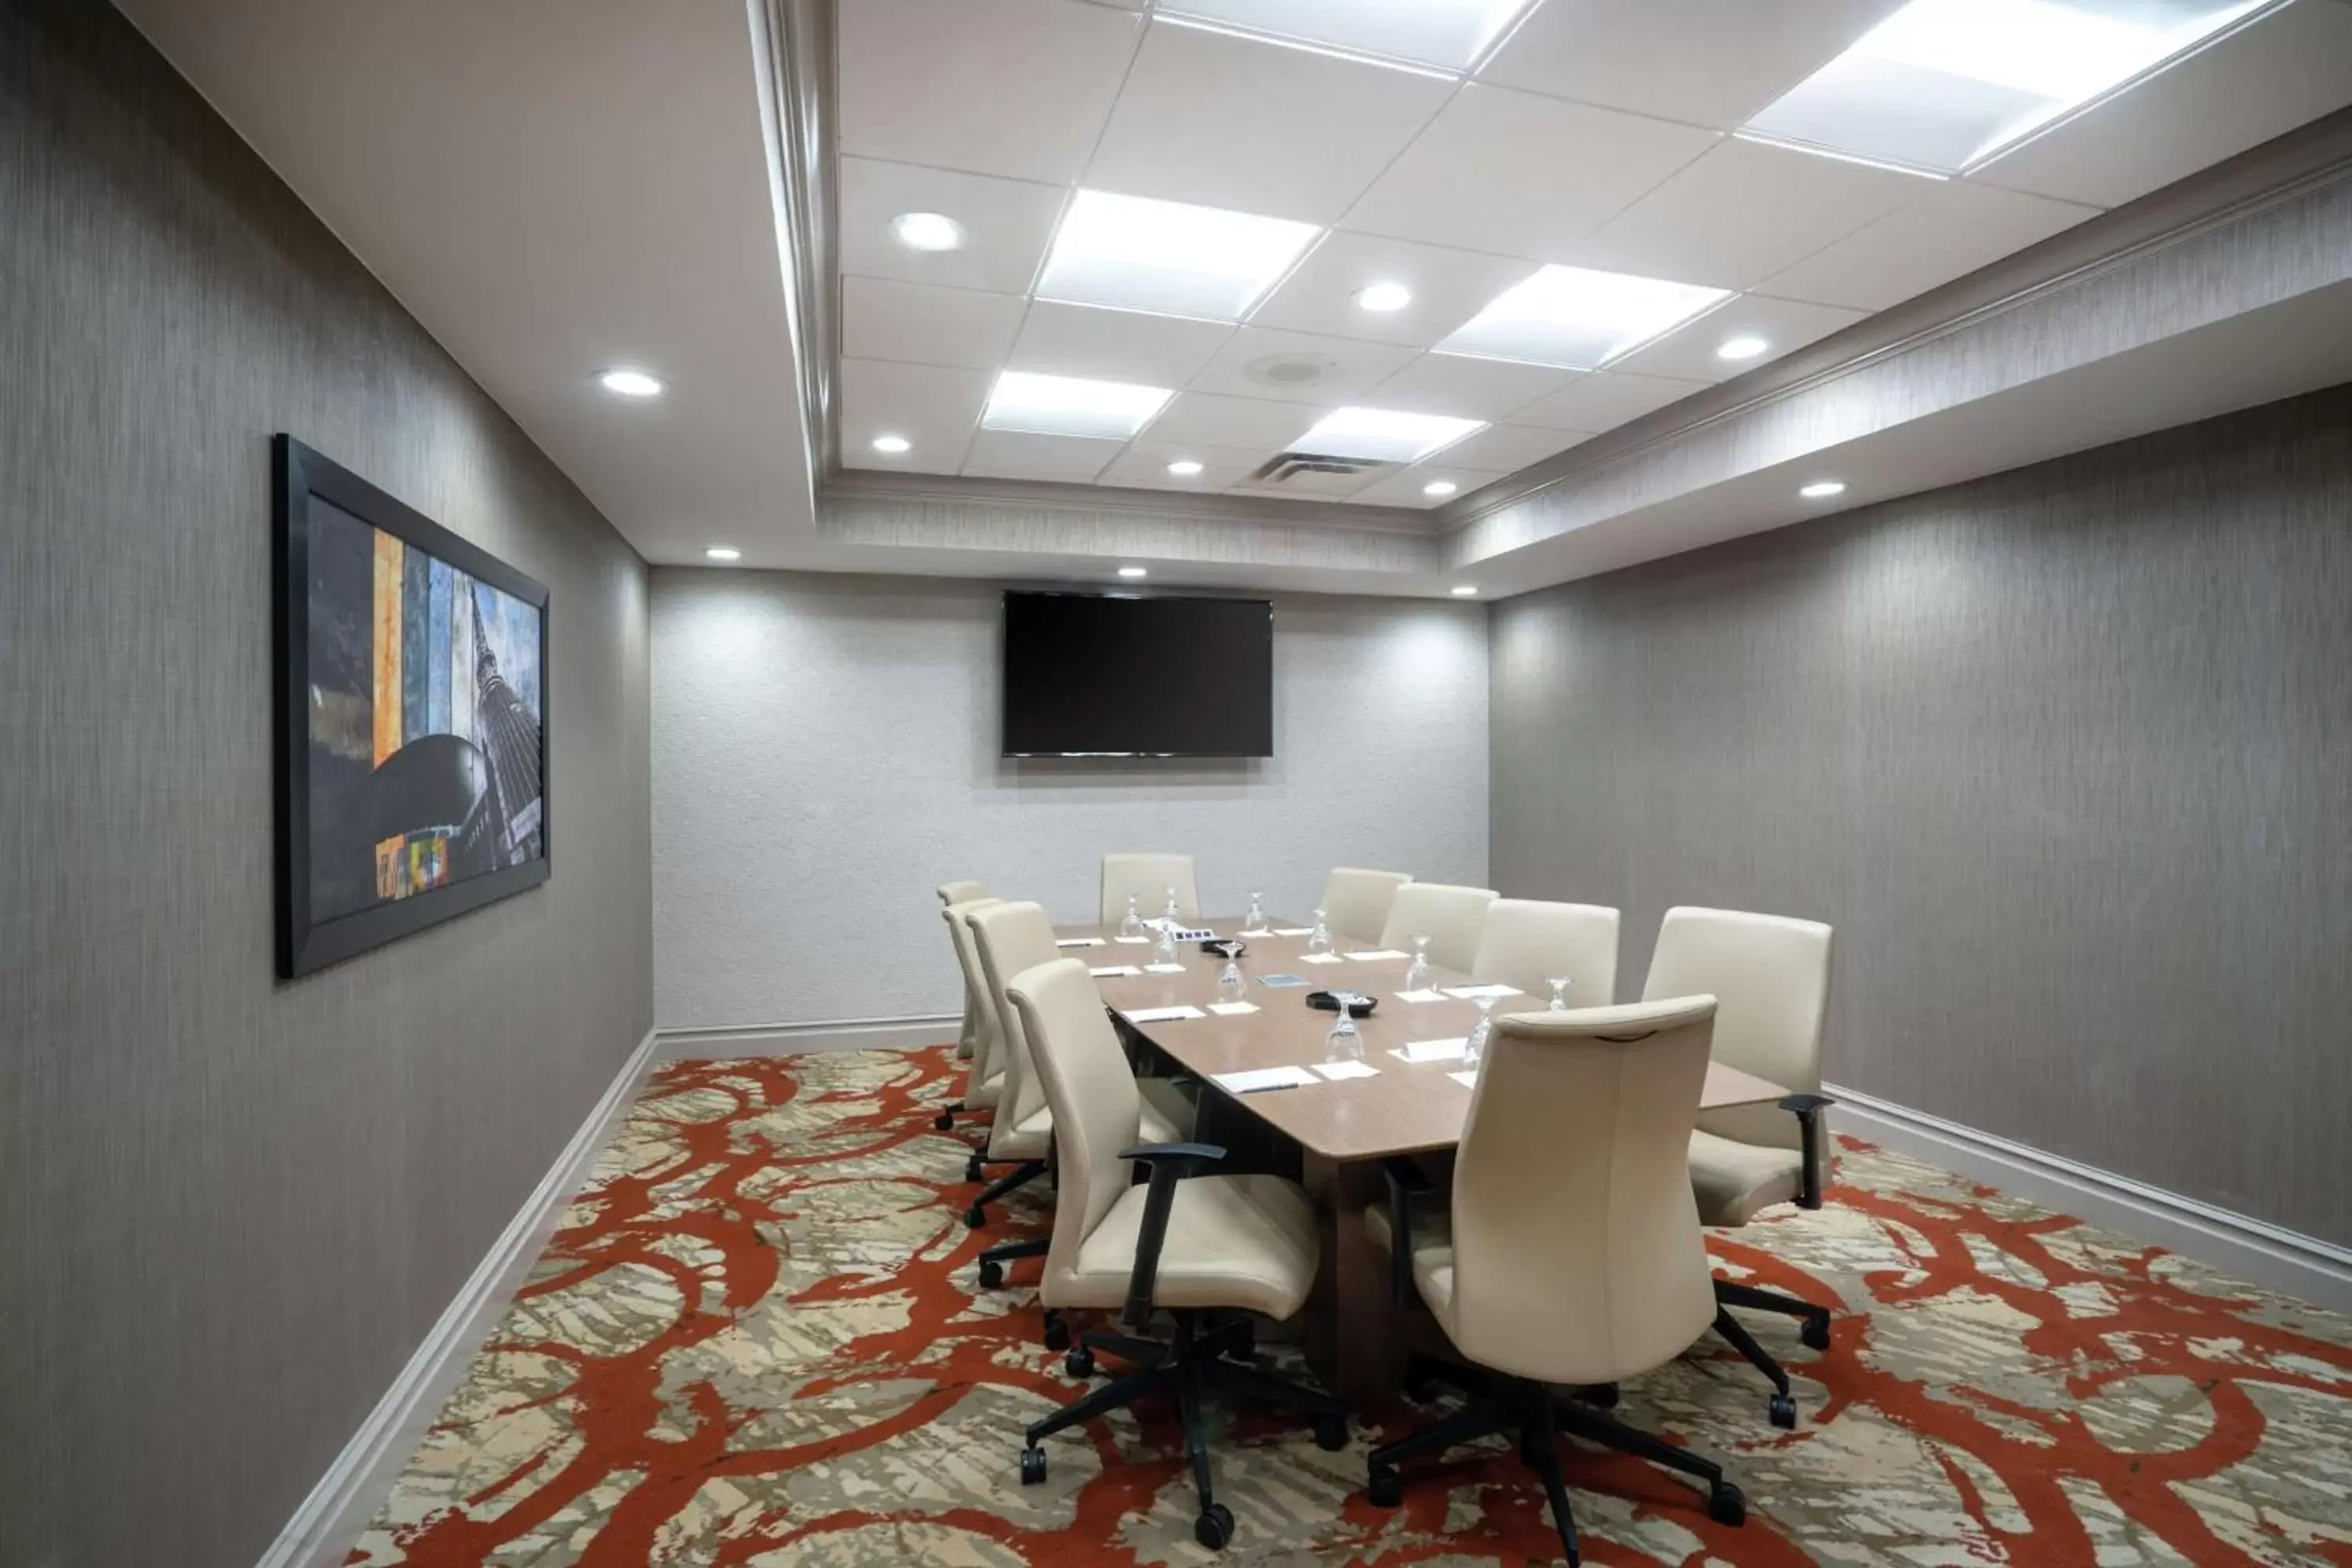 Meeting/conference room in Embassy Suites Nashville - at Vanderbilt